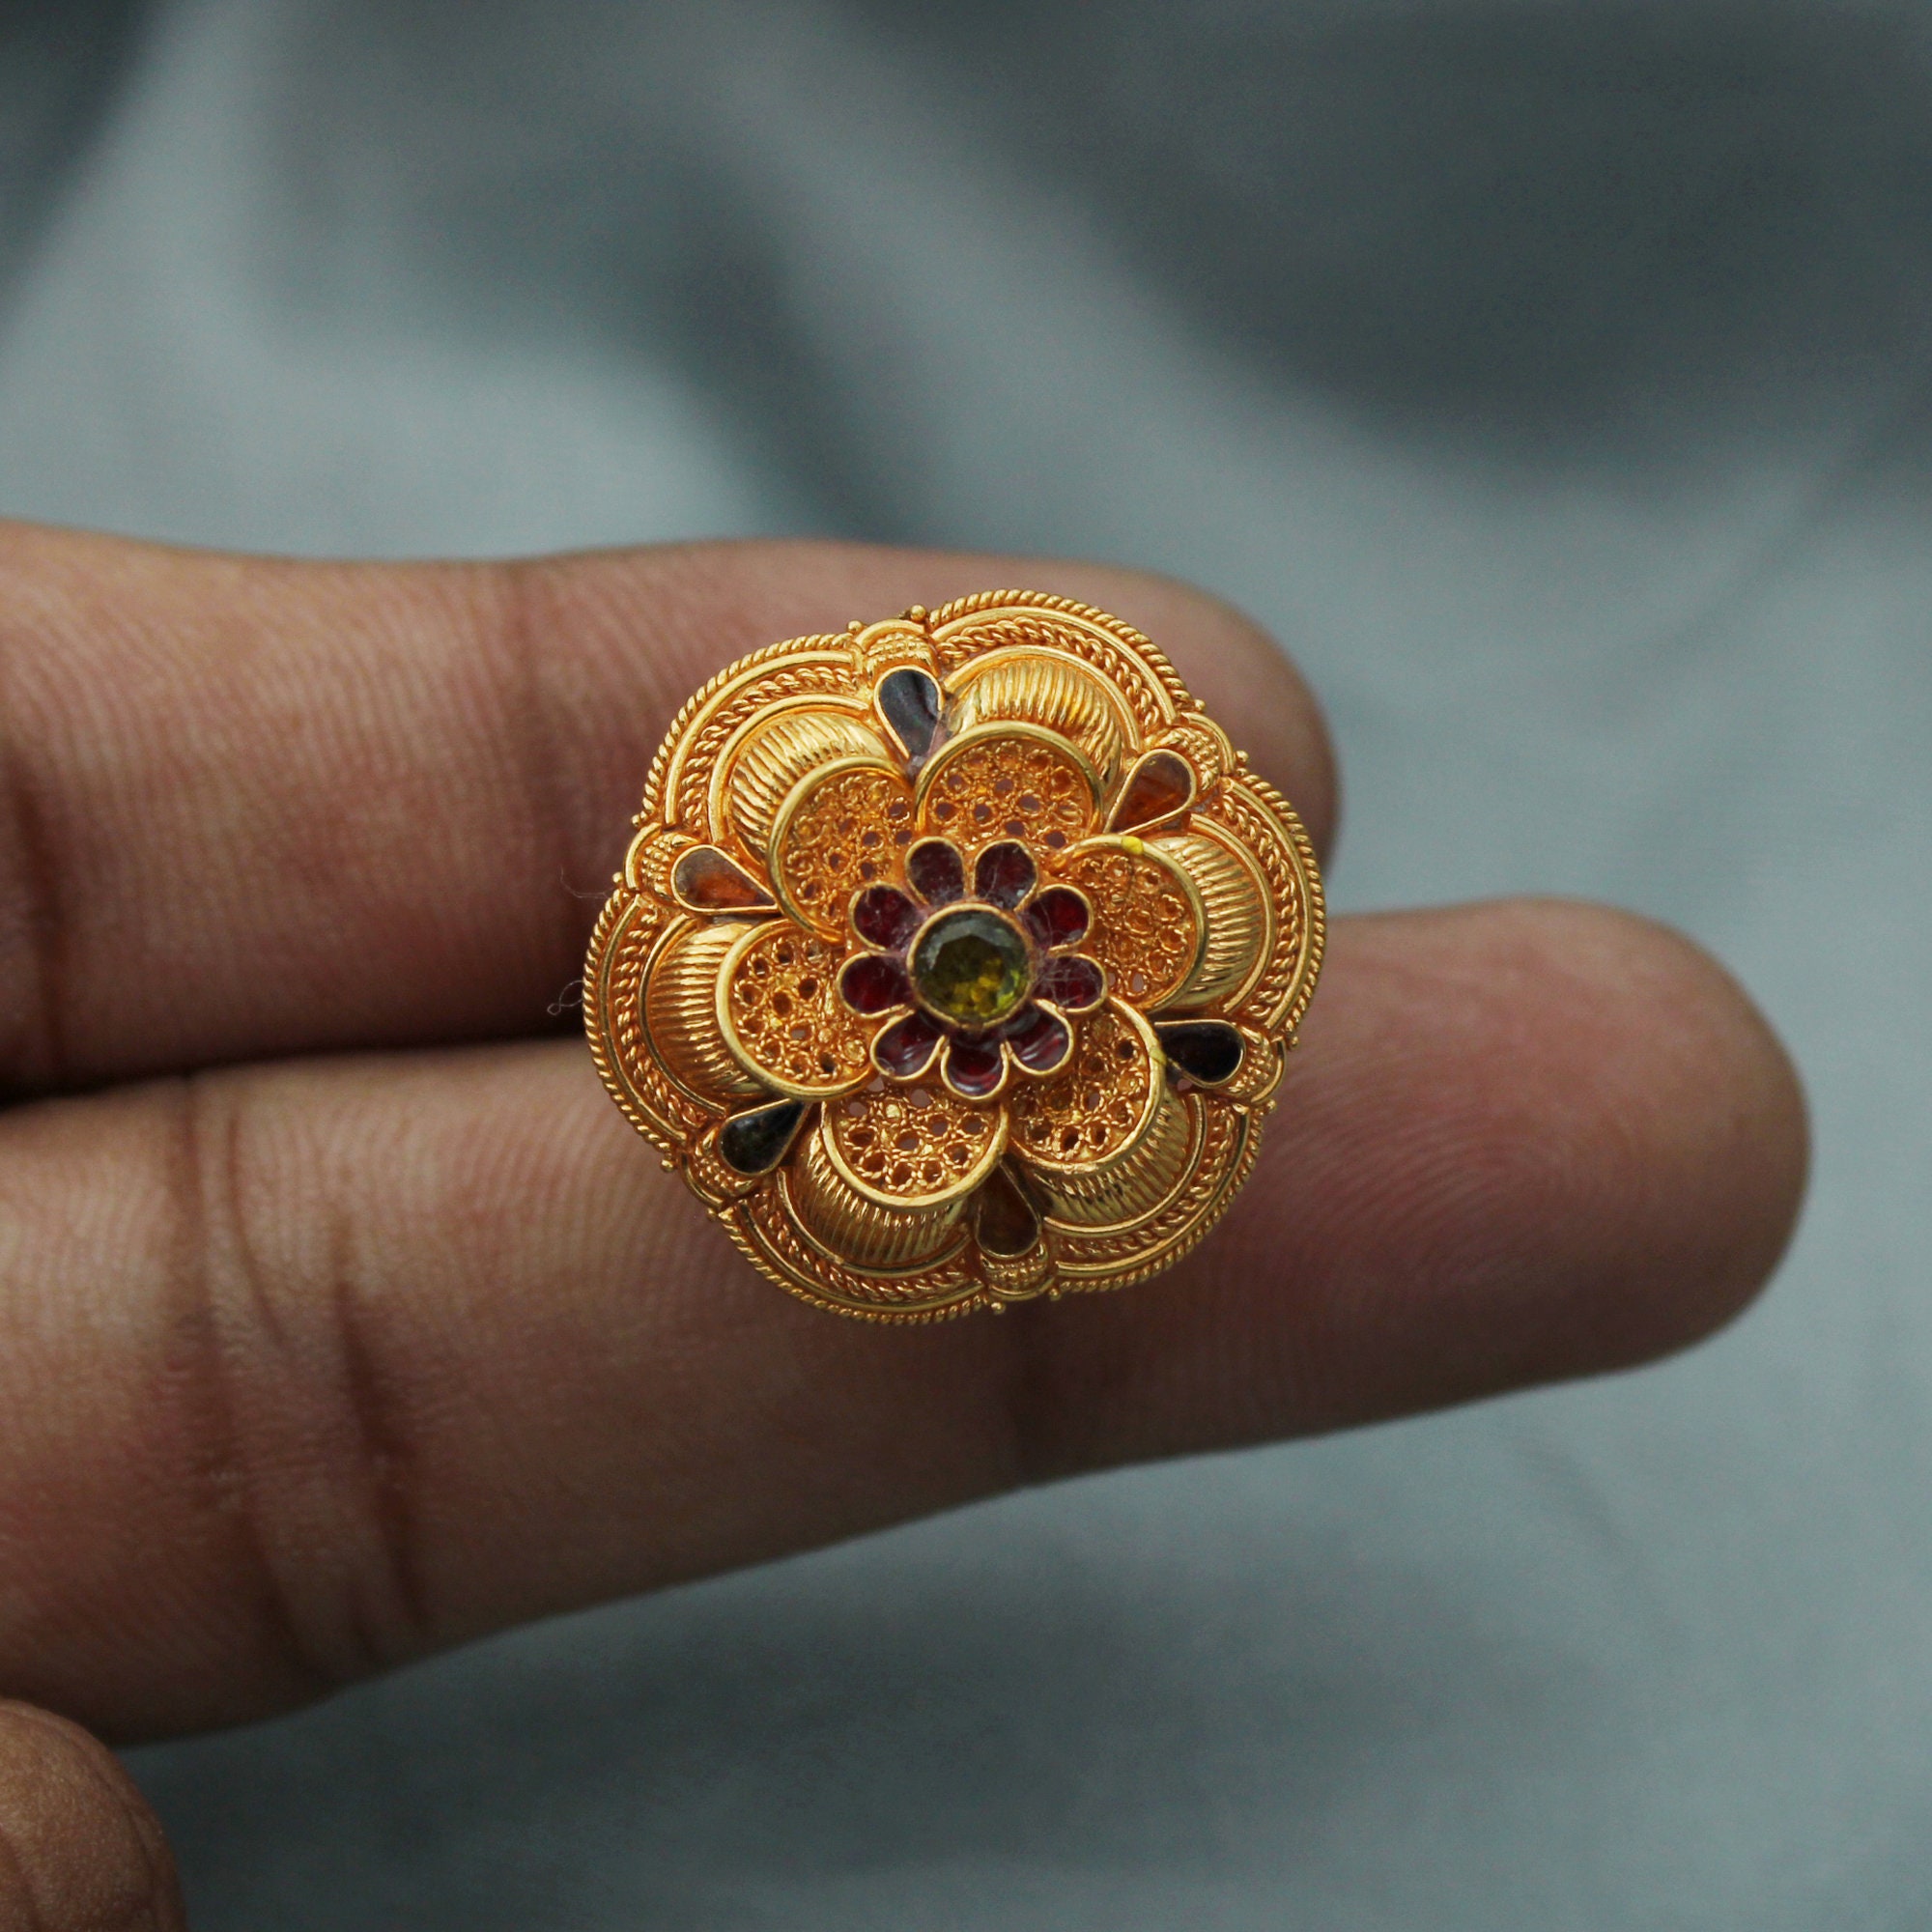 Rajasthani Turban Design Gem Gold Ring at best price in Surat